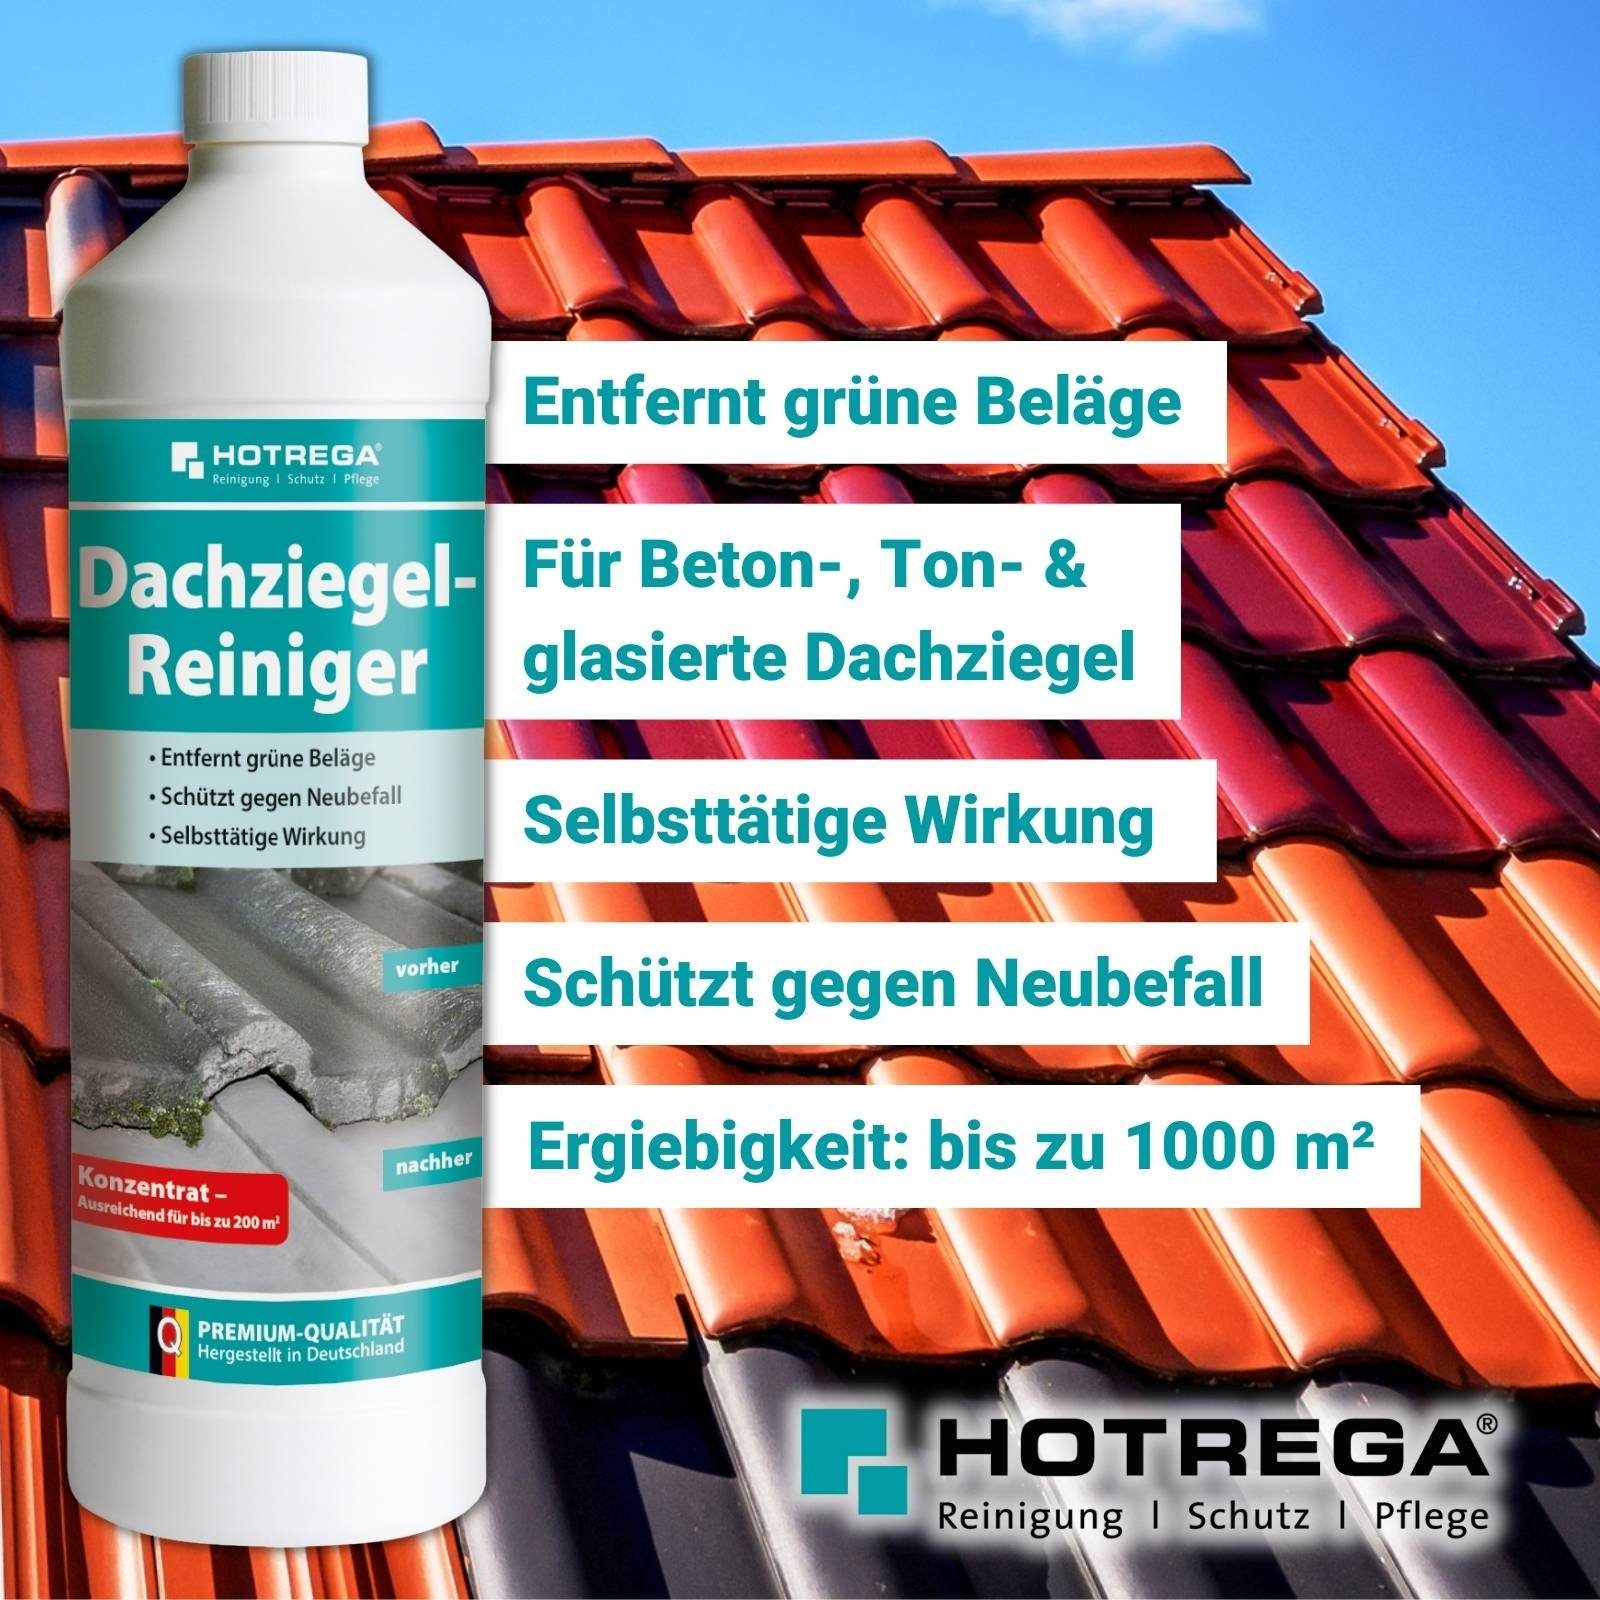 Dachziegel 5x1L HOTREGA® Messbecher Reiniger Druckspritze + Reinigungskonzentrat Grünbelagentferner